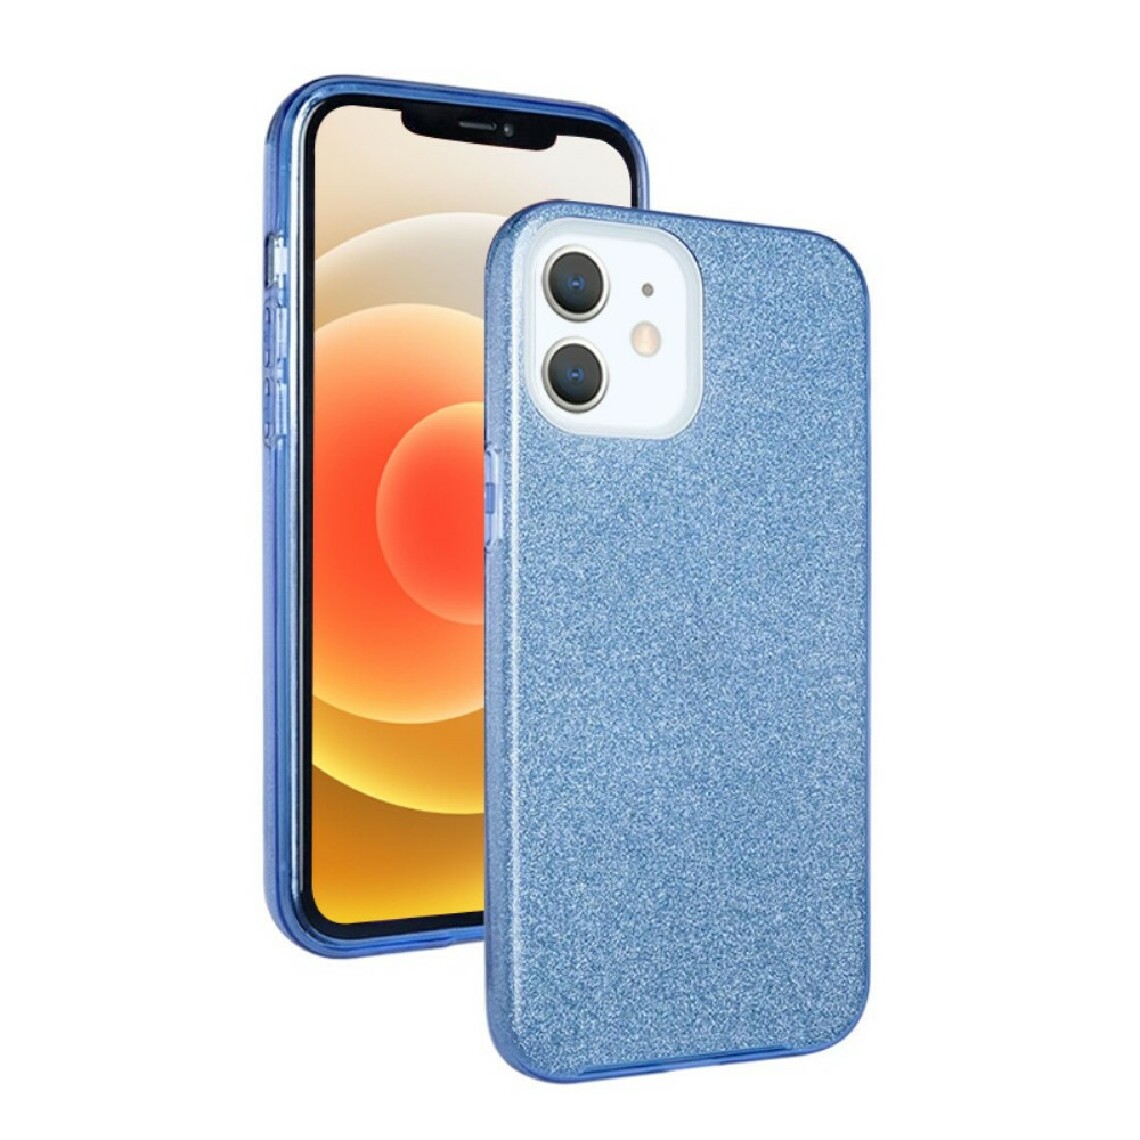 Nxe - Coque en TPU design pailleté bleu pour votre Apple iPhone 12 Mini - Coque, étui smartphone